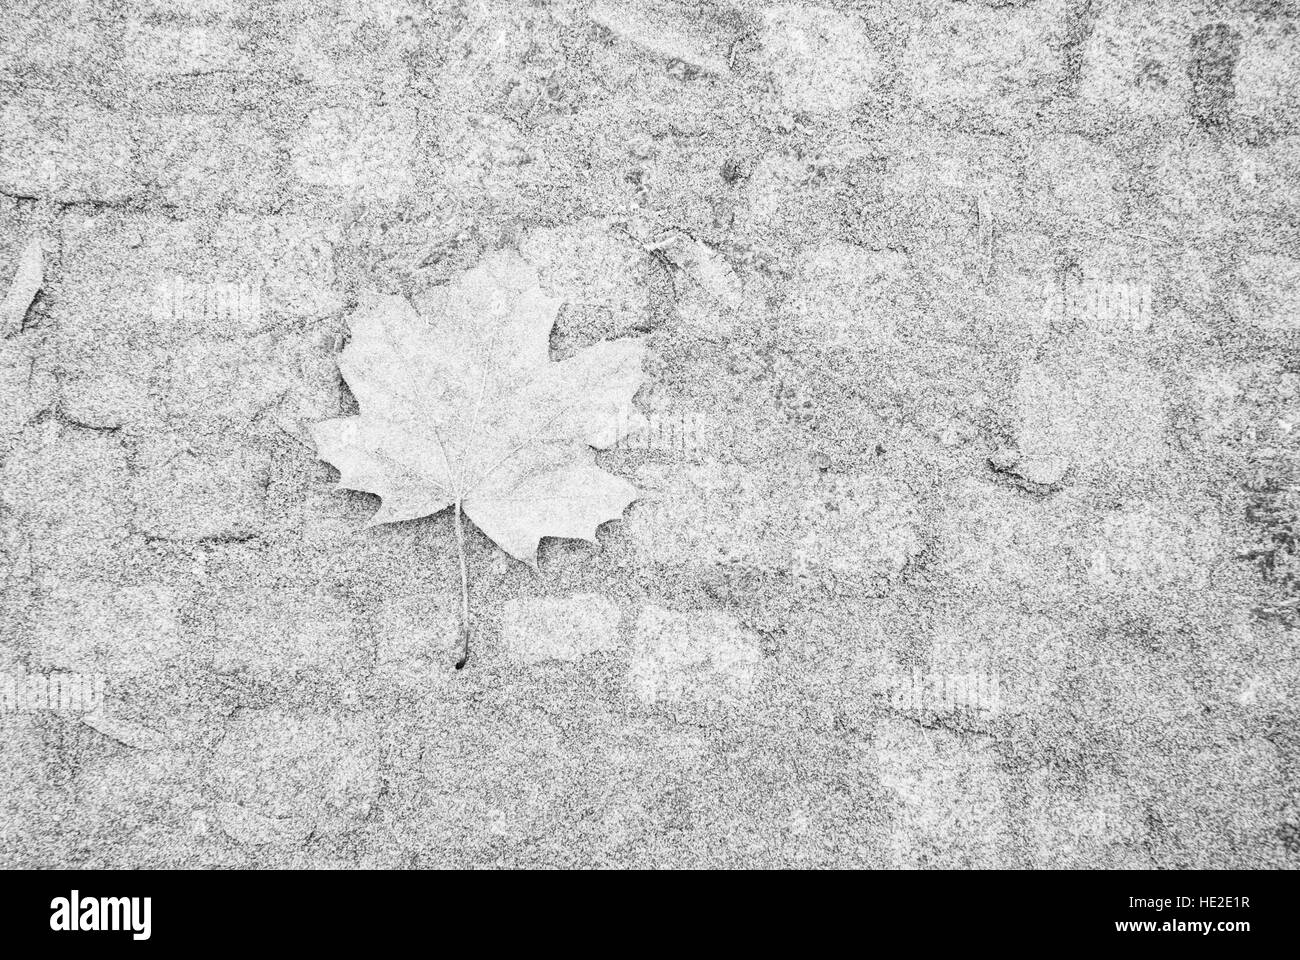 Einzelne Ahornblatt auf Asphalt durch Raureif bedeckt Stockfoto